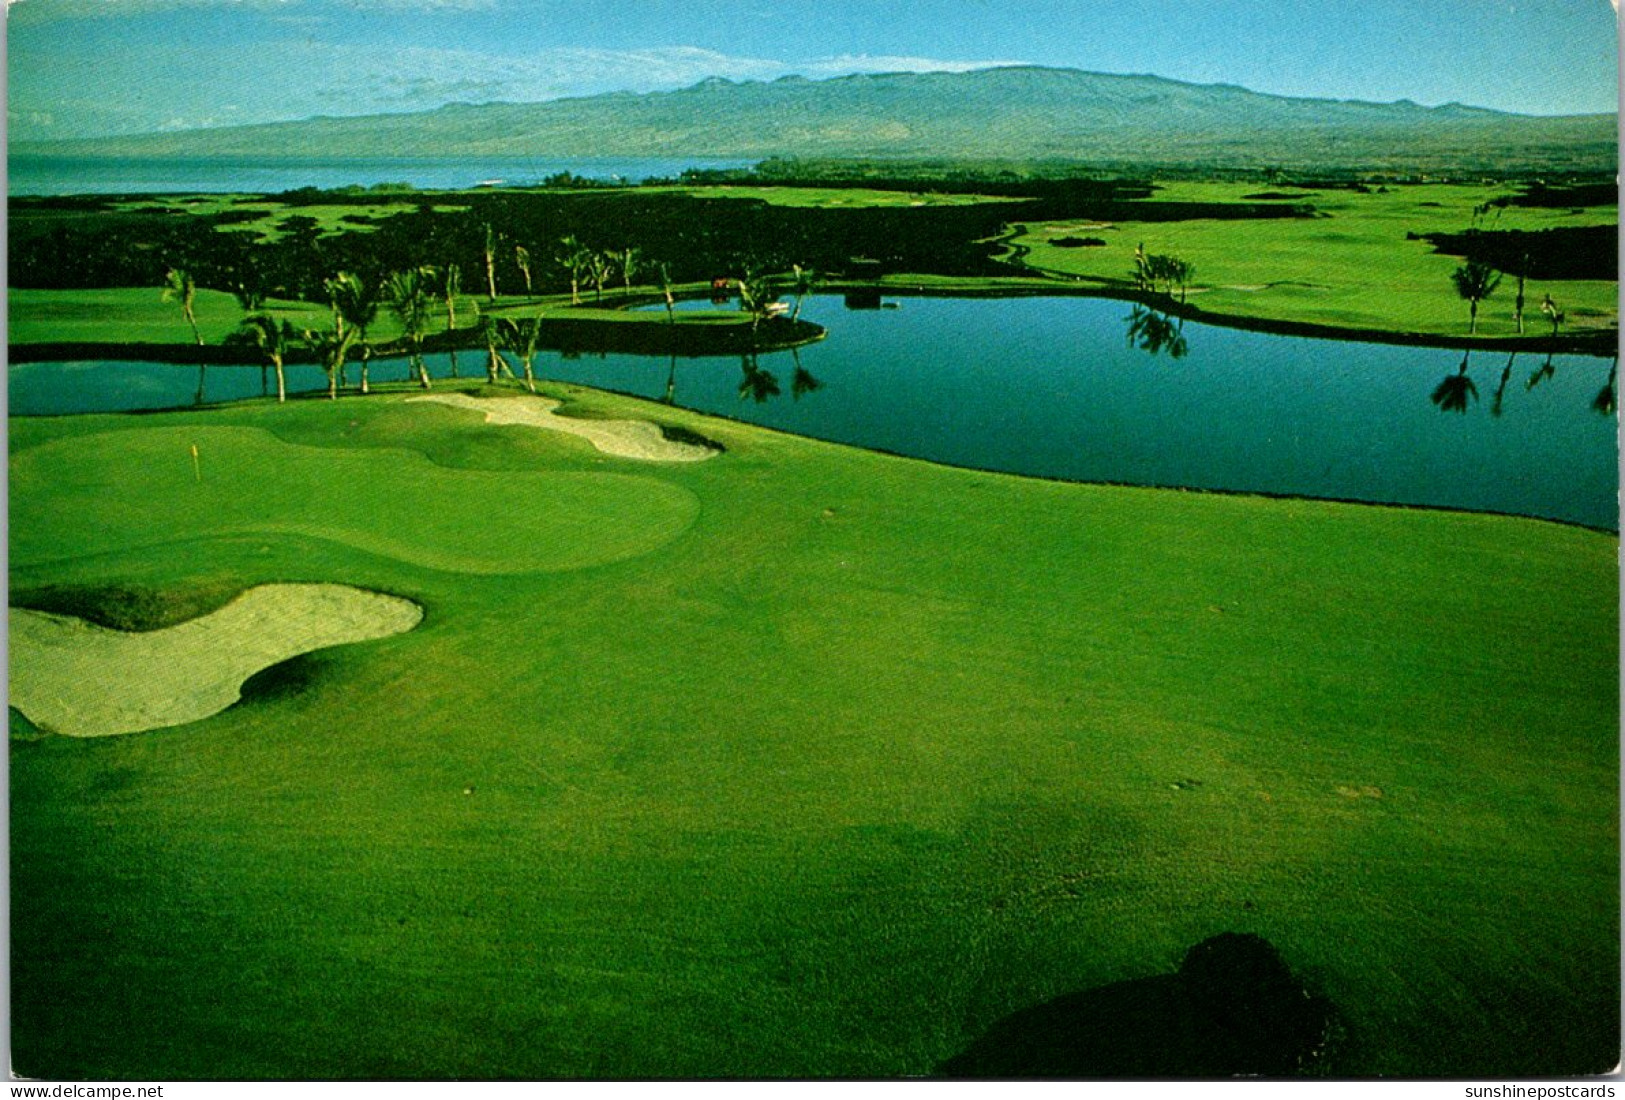 Hawaii Big Island Kohala Coast The Mauna Lani Resort Golf Course Number 3 Green - Hawaï